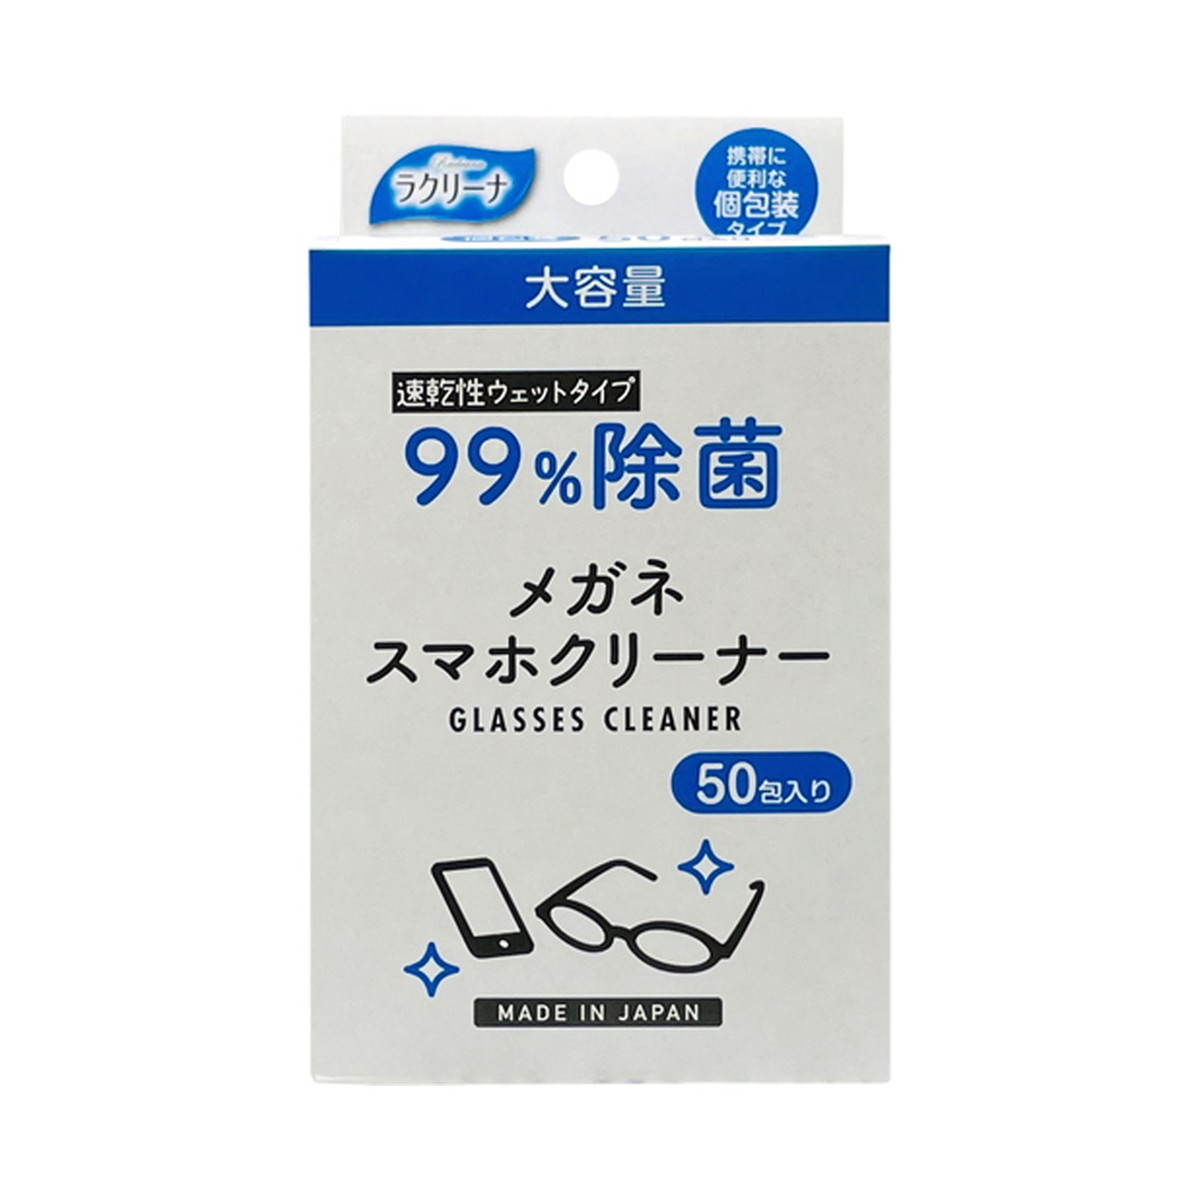 昭和紙工 ラクリーナ 99%除菌 メガネ スマホ クリーナー 50包 個包装